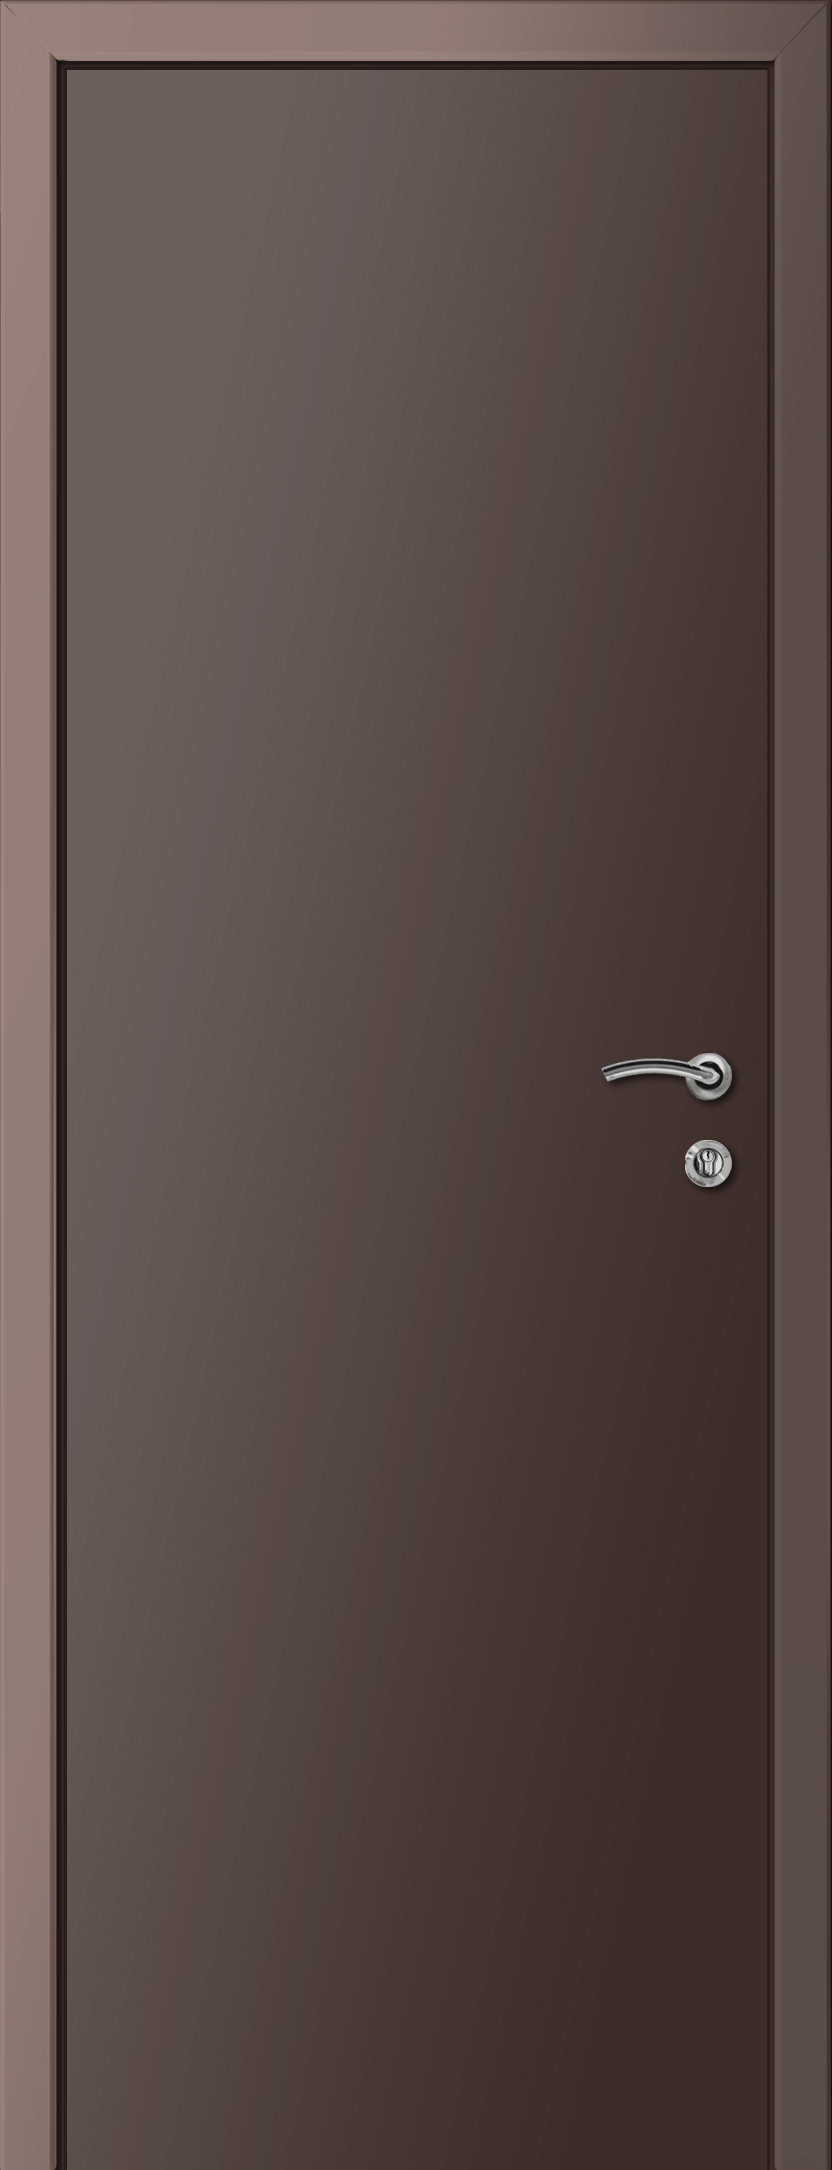 Пластиковая дверь KAPELLI multicolor ДГ RAL 8017 Коричневый